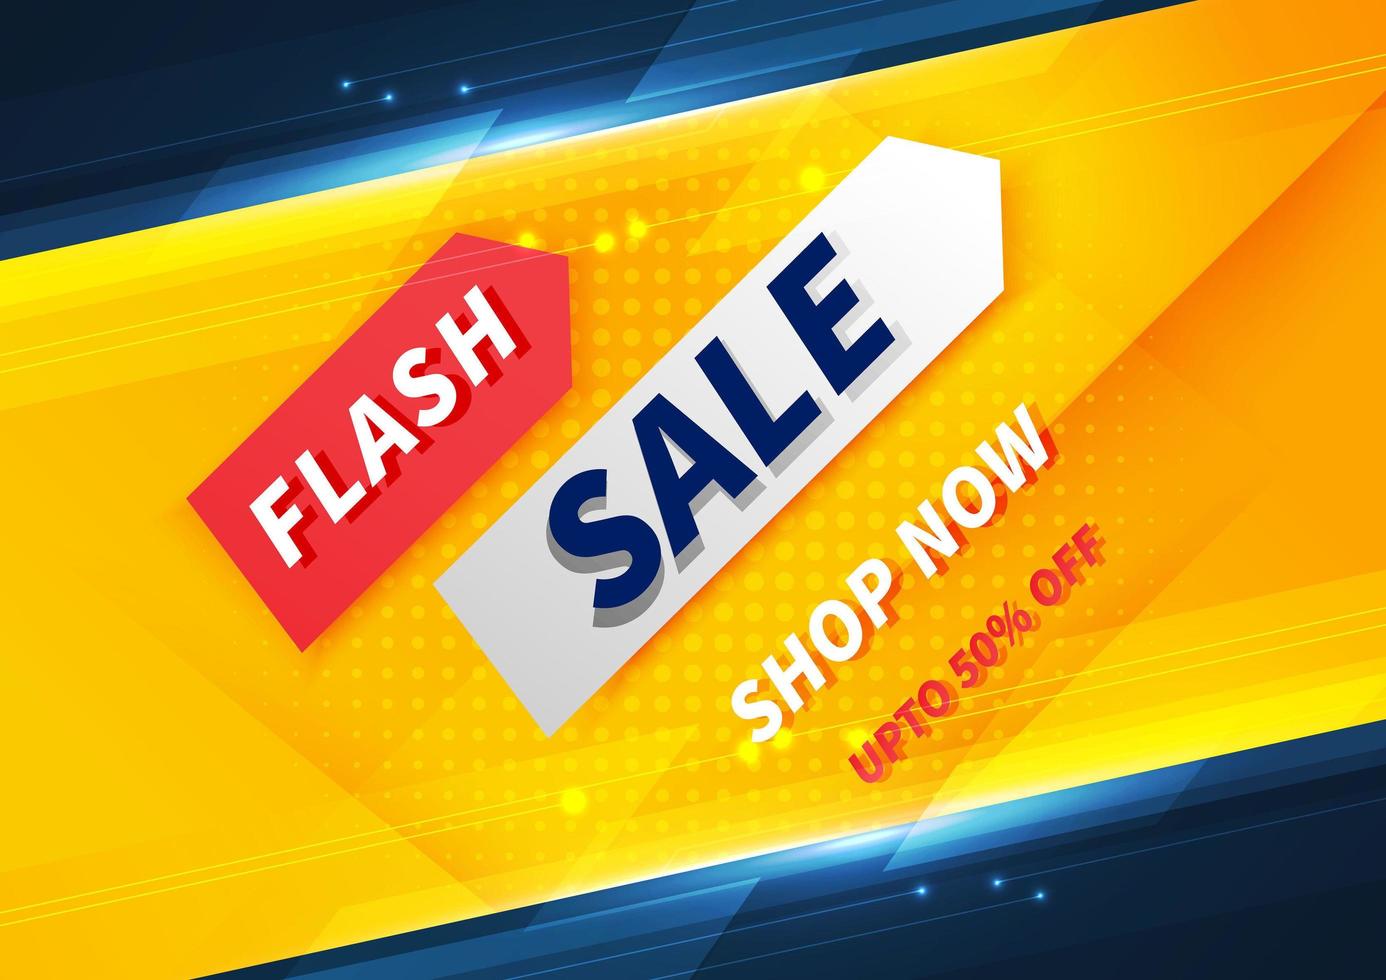 flash försäljning banner designmall erbjuder shopping på gul bakgrund. vektor